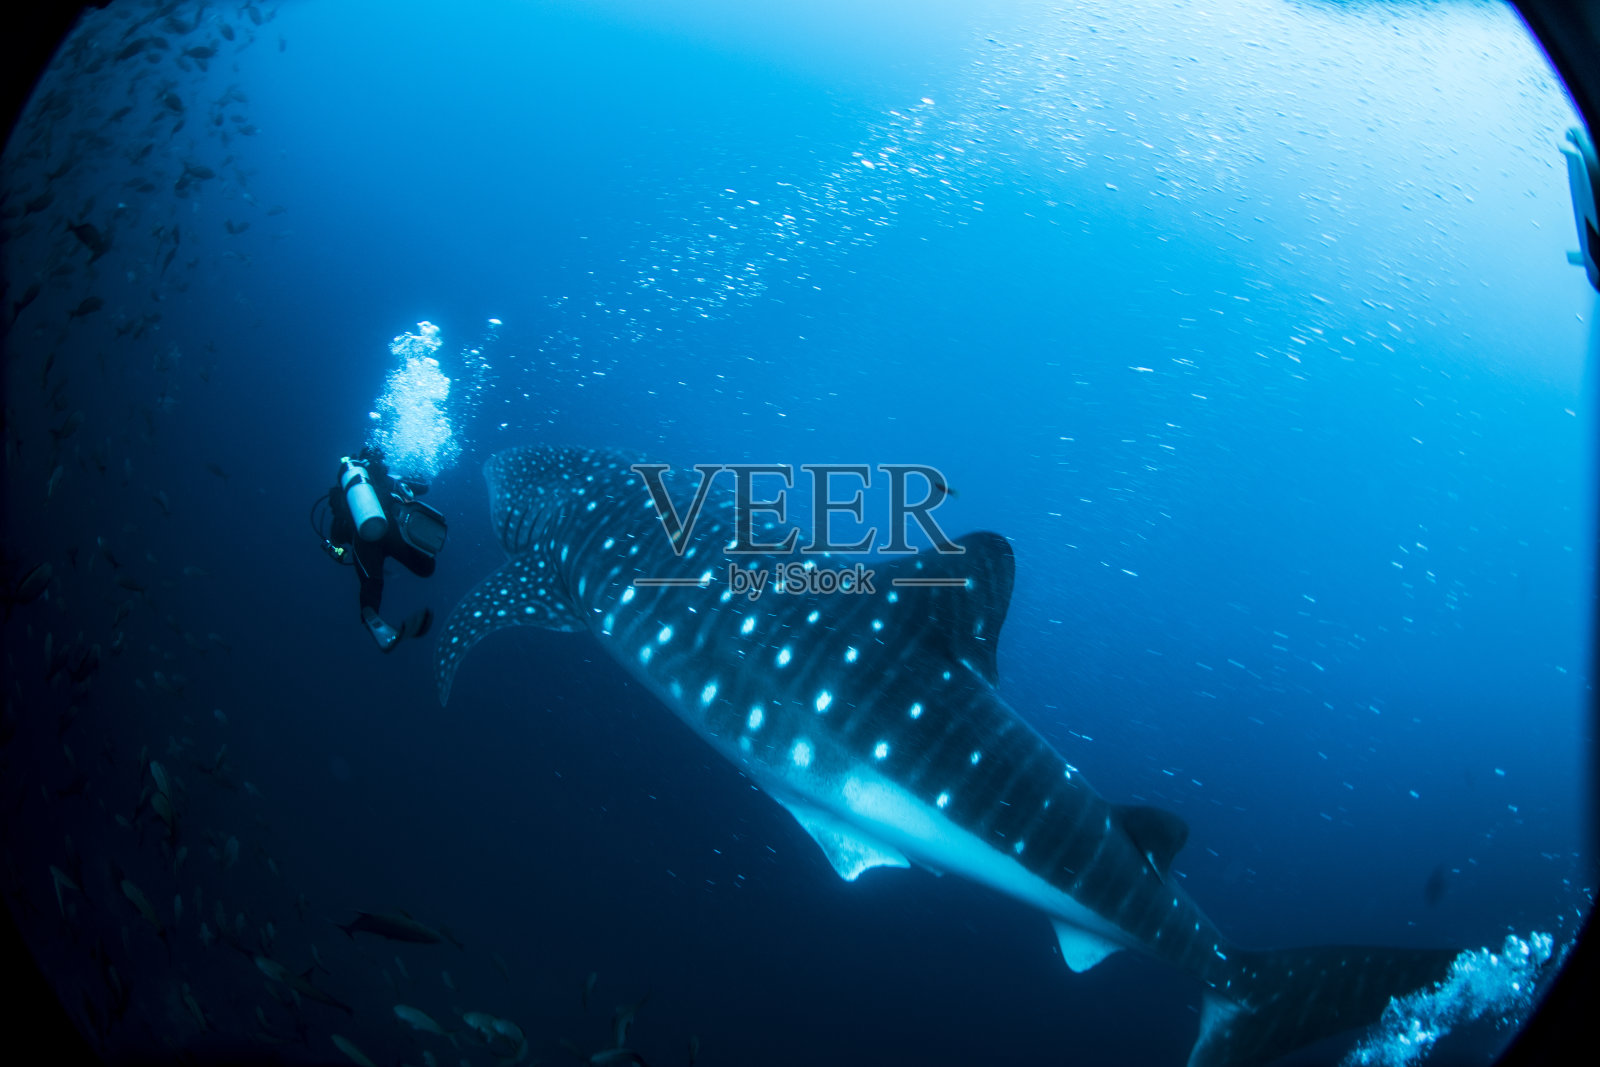 厄瓜多尔加拉帕戈斯群岛达尔文岛的鲸鲨和水肺潜水员照片摄影图片